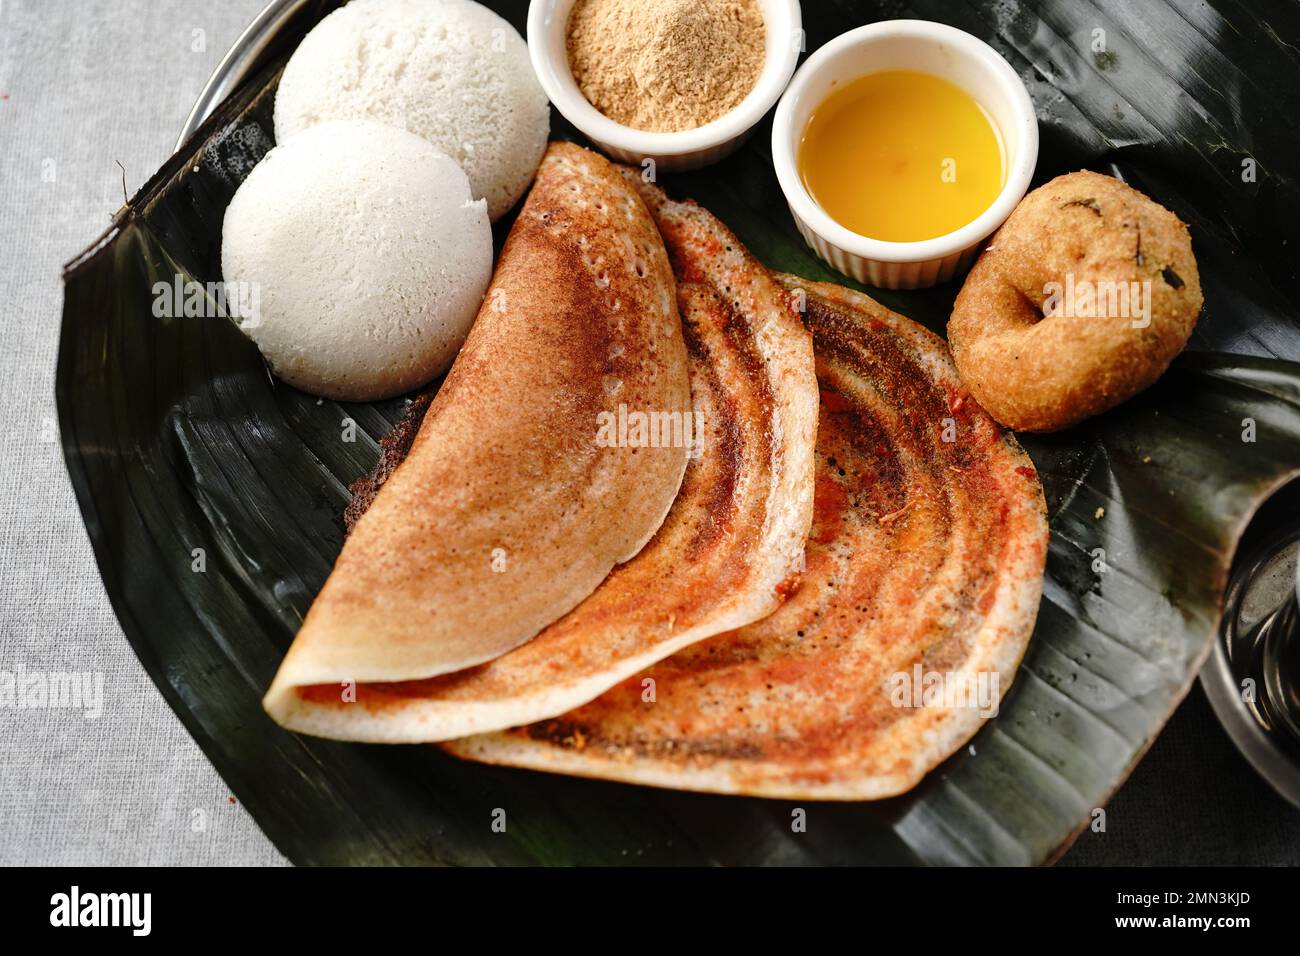 Südindisches vegetarisches Frühstück im idli karam podi dosa sambar Chutney Pulver Ghee und Filterkaffee Stockfoto